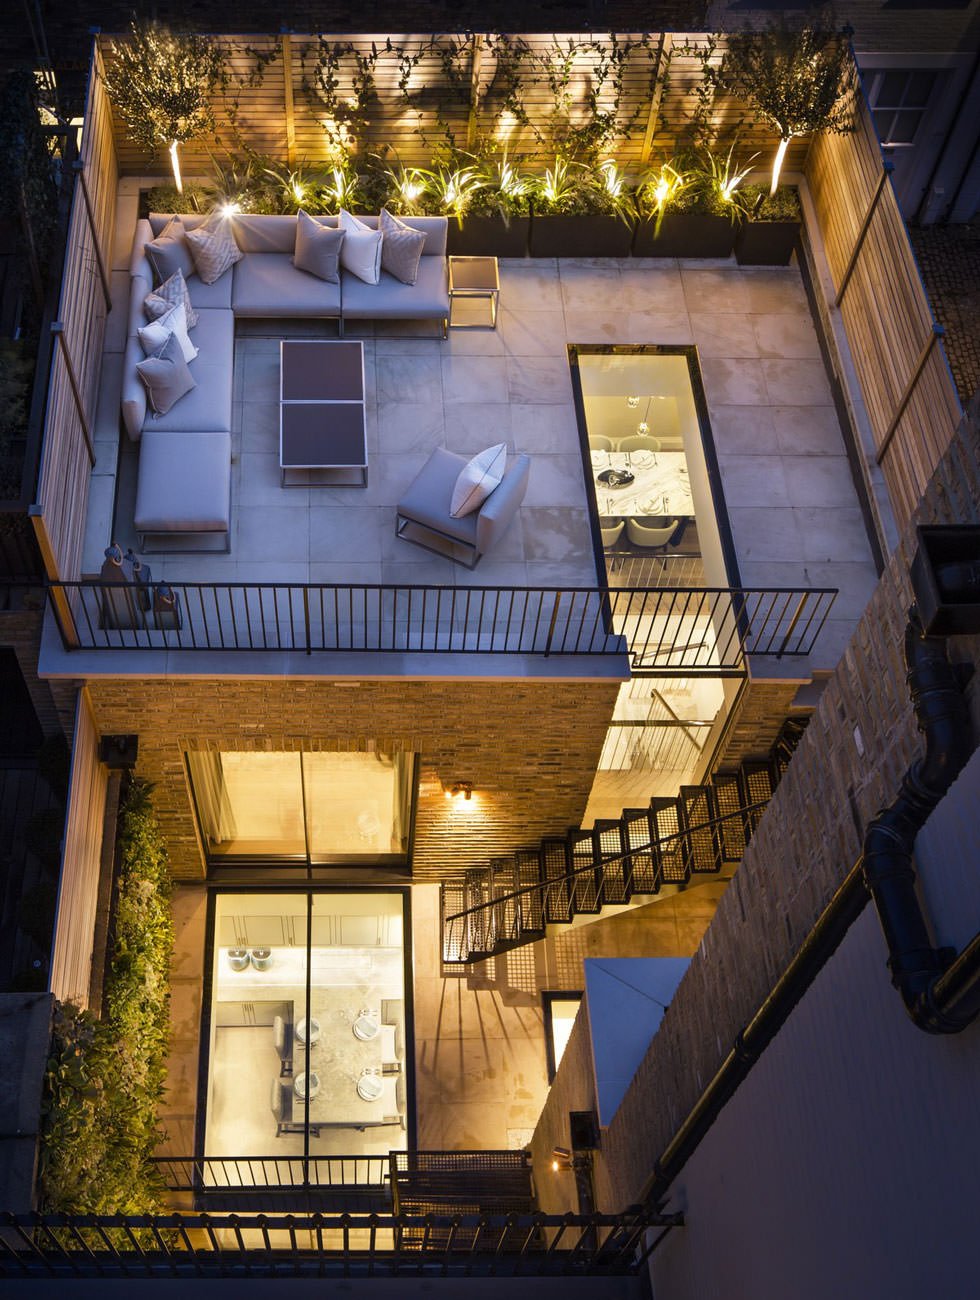 Stupenda idea per questo terrazzo con pavimento in vetro che fa passare la luce nella casa e permette la vista all'interno della casa - idee piastrelle per terrazzi esterni, stile moderno